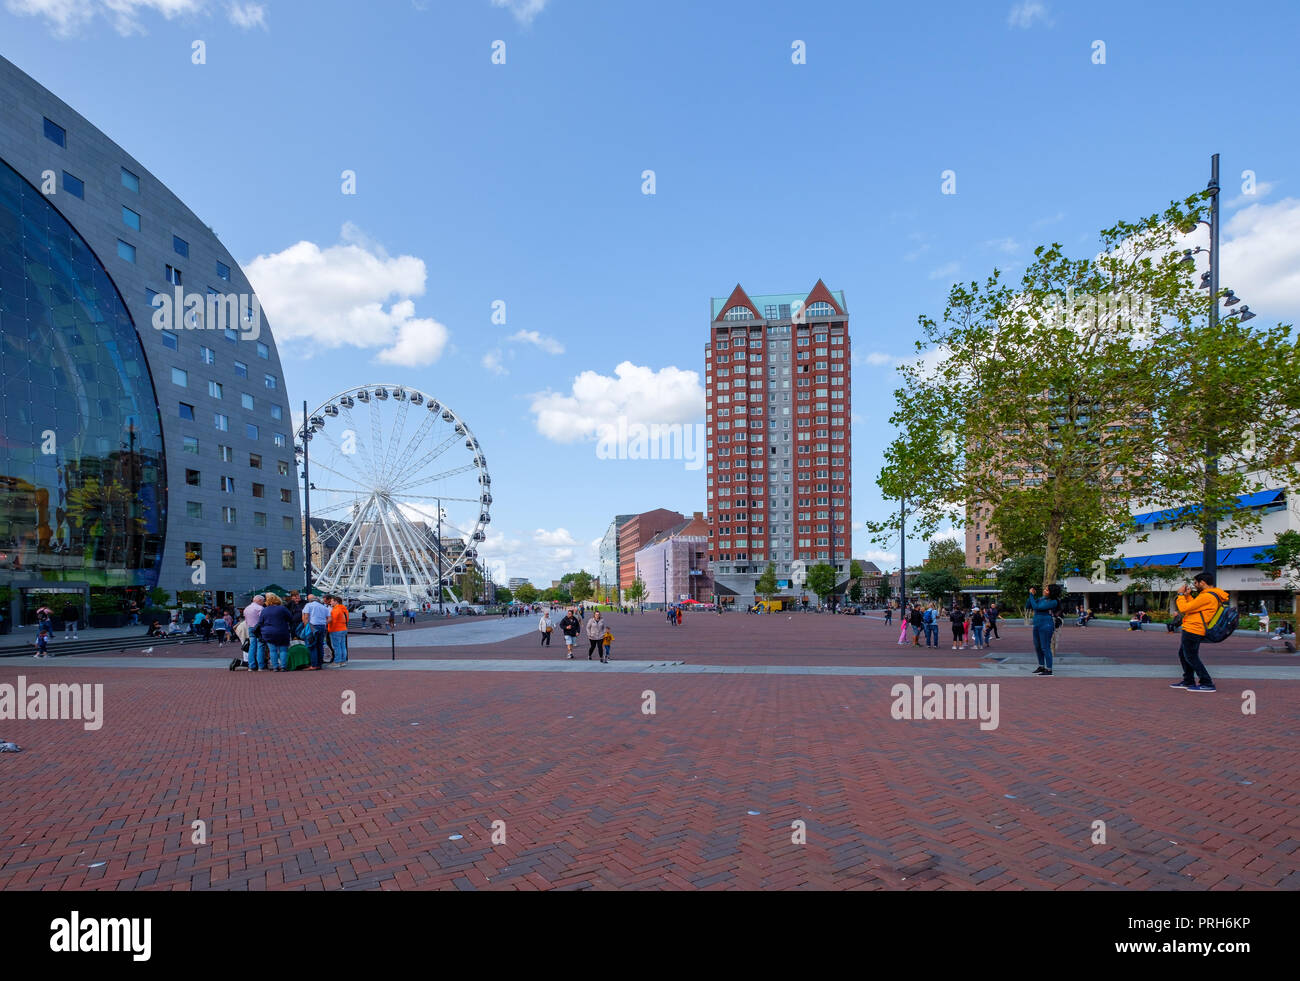 Grande piazza con gruppi di persone di fronte al famoso mercato hall di Rotterdam, Paesi Bassi. Accanto alla costruzione di una ruota panoramica Ferris. Foto Stock